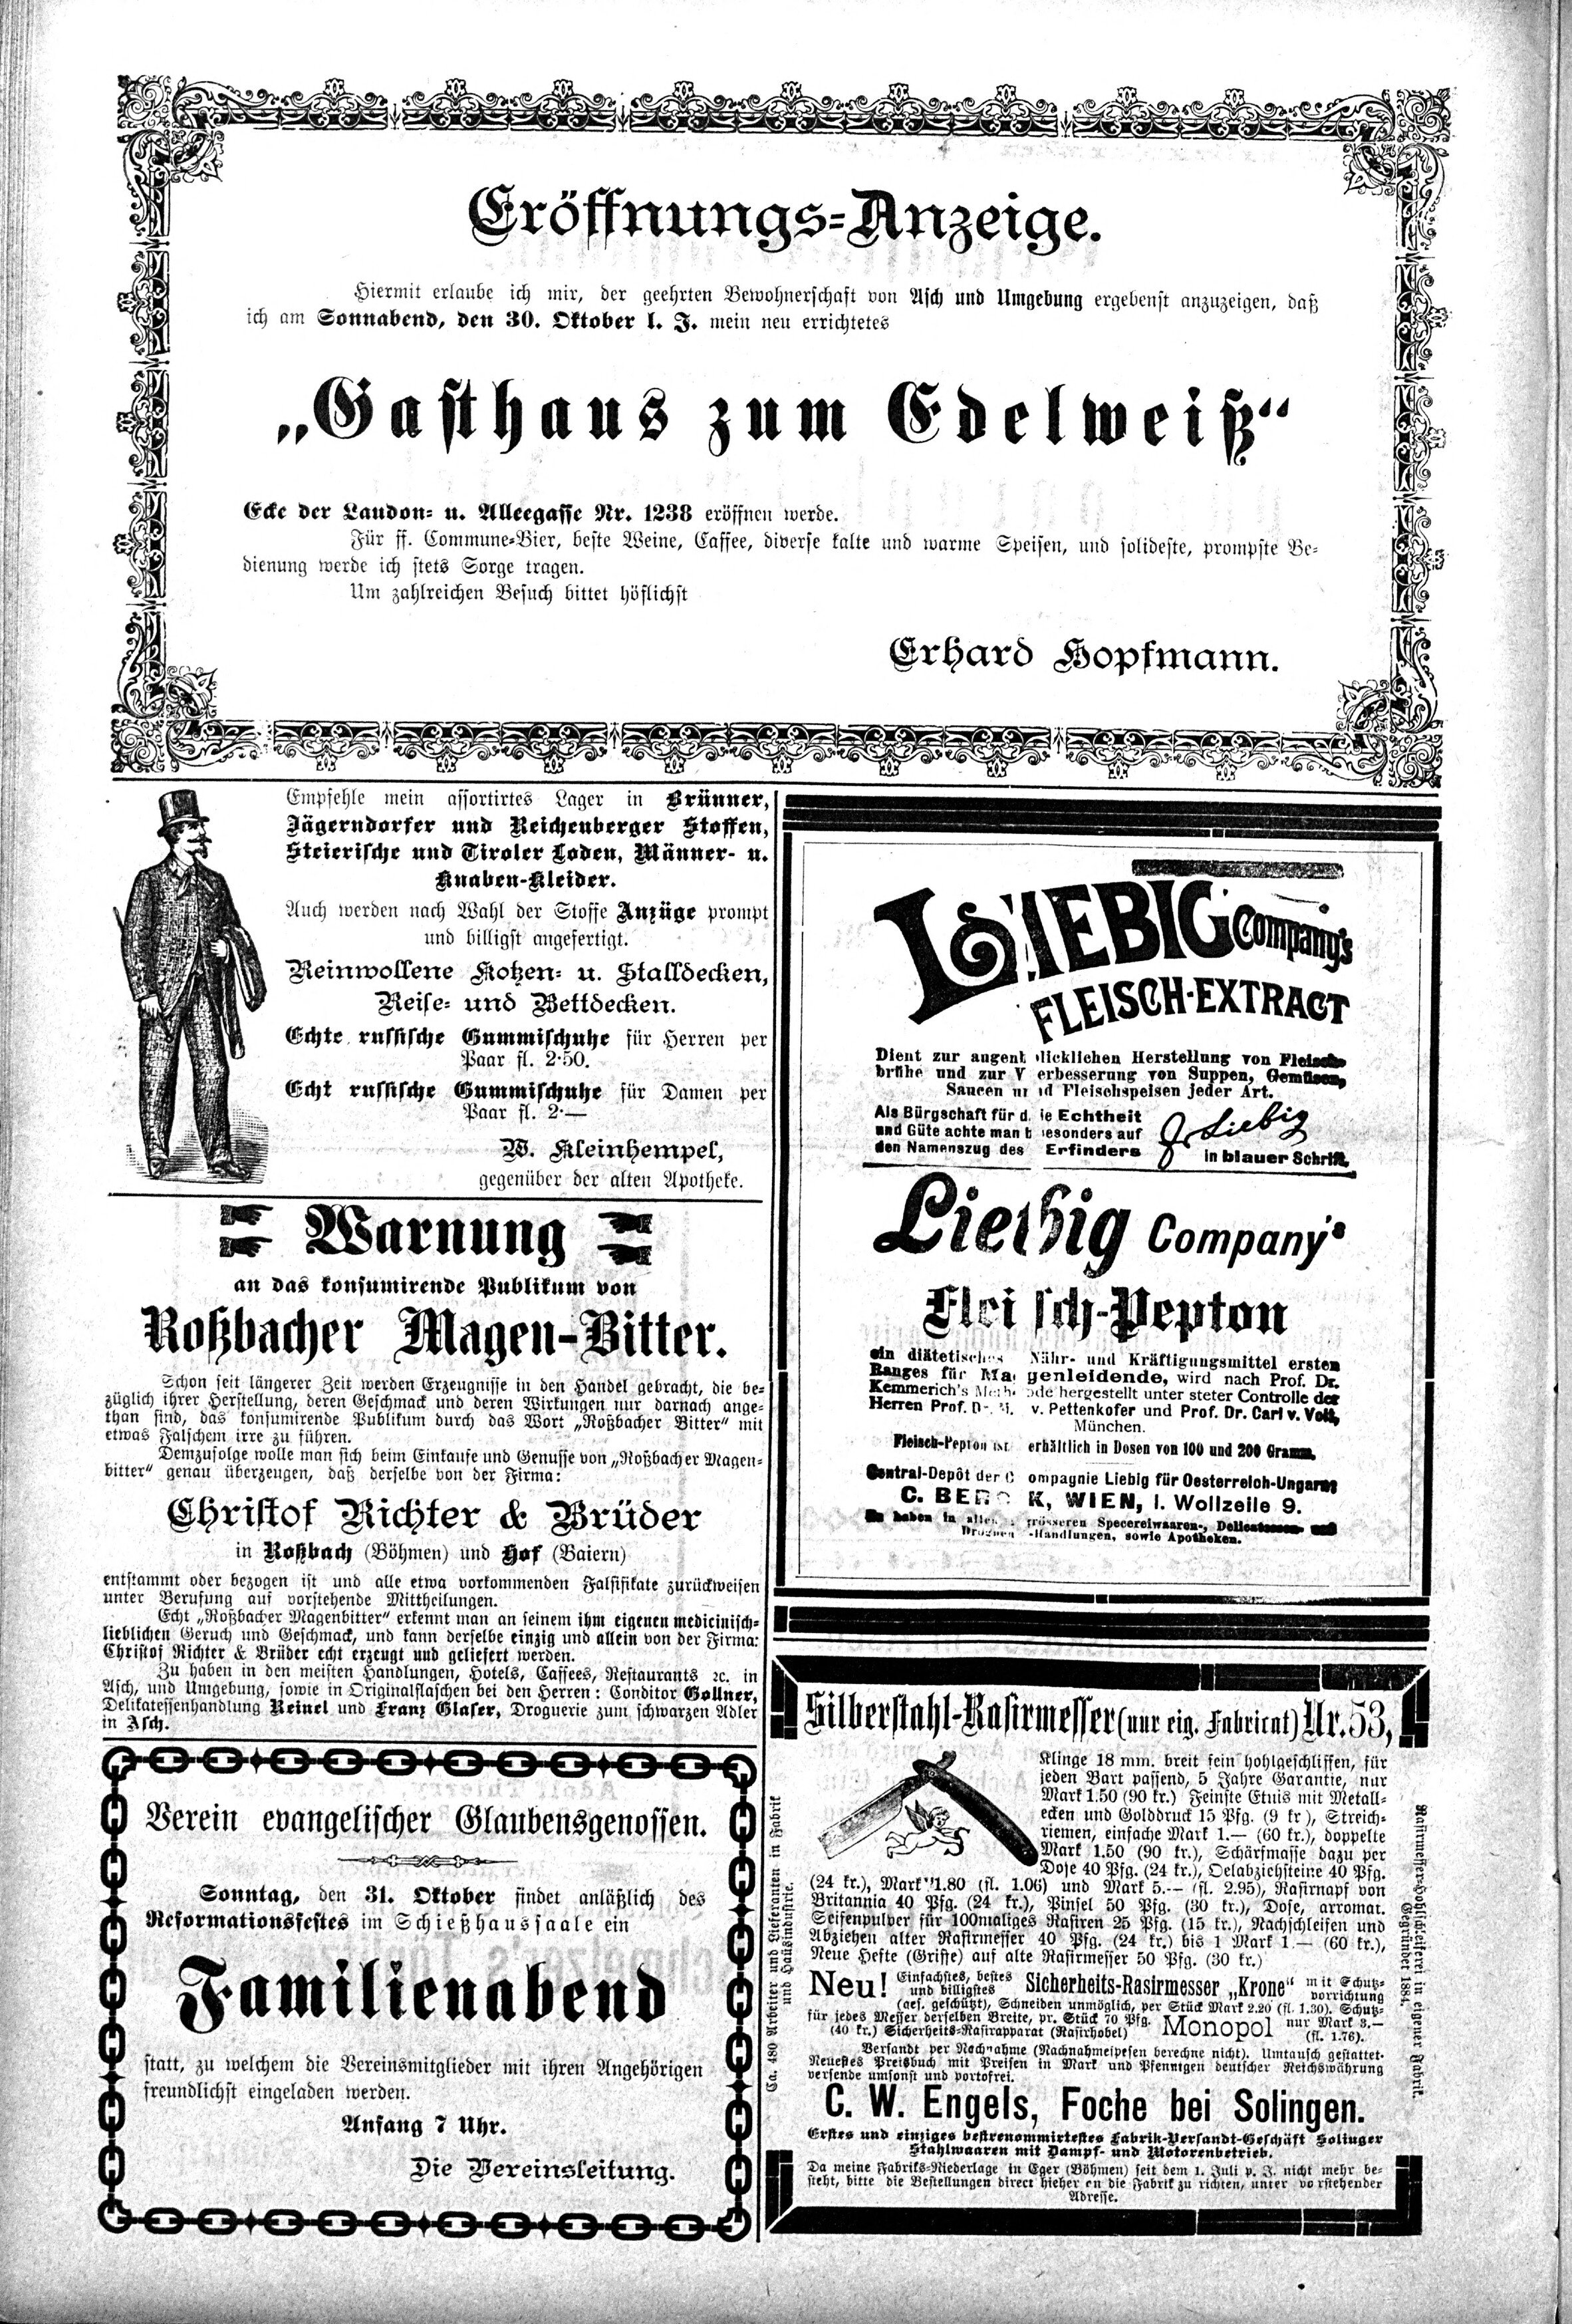 8. soap-ch_knihovna_ascher-zeitung-1897-10-30-n87_3820